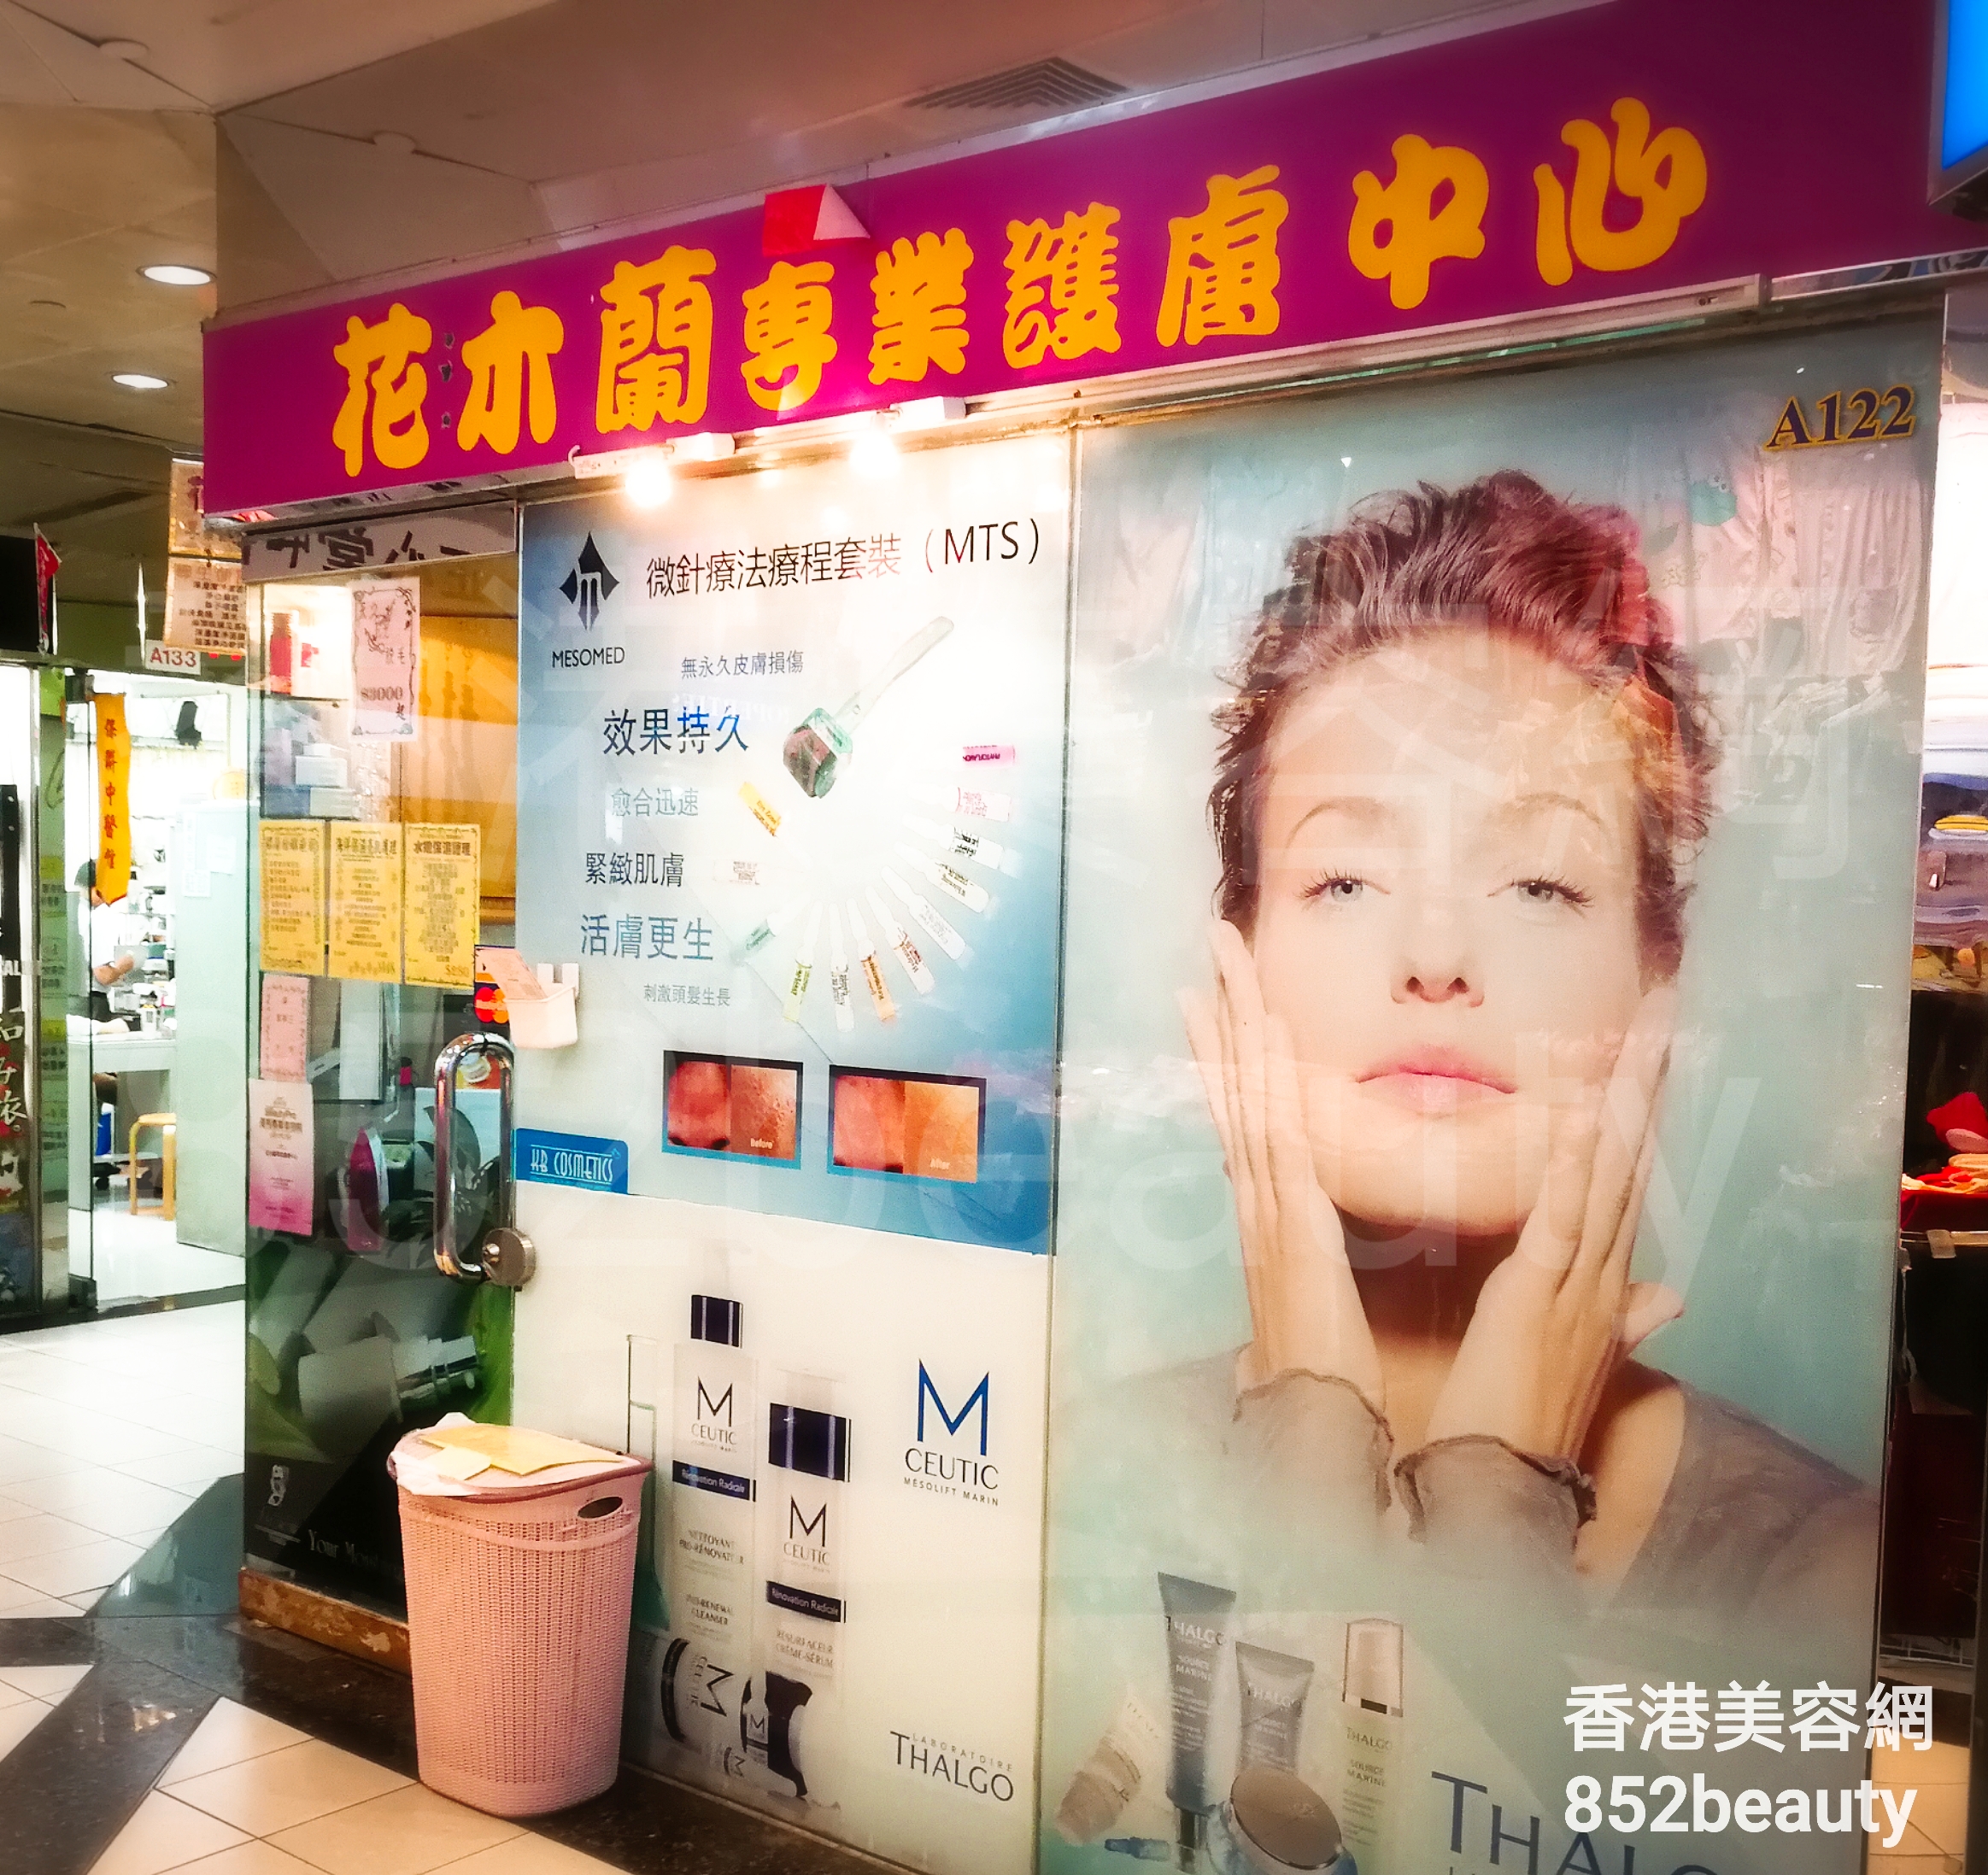 医学美容: 花木蘭 專業護膚中心